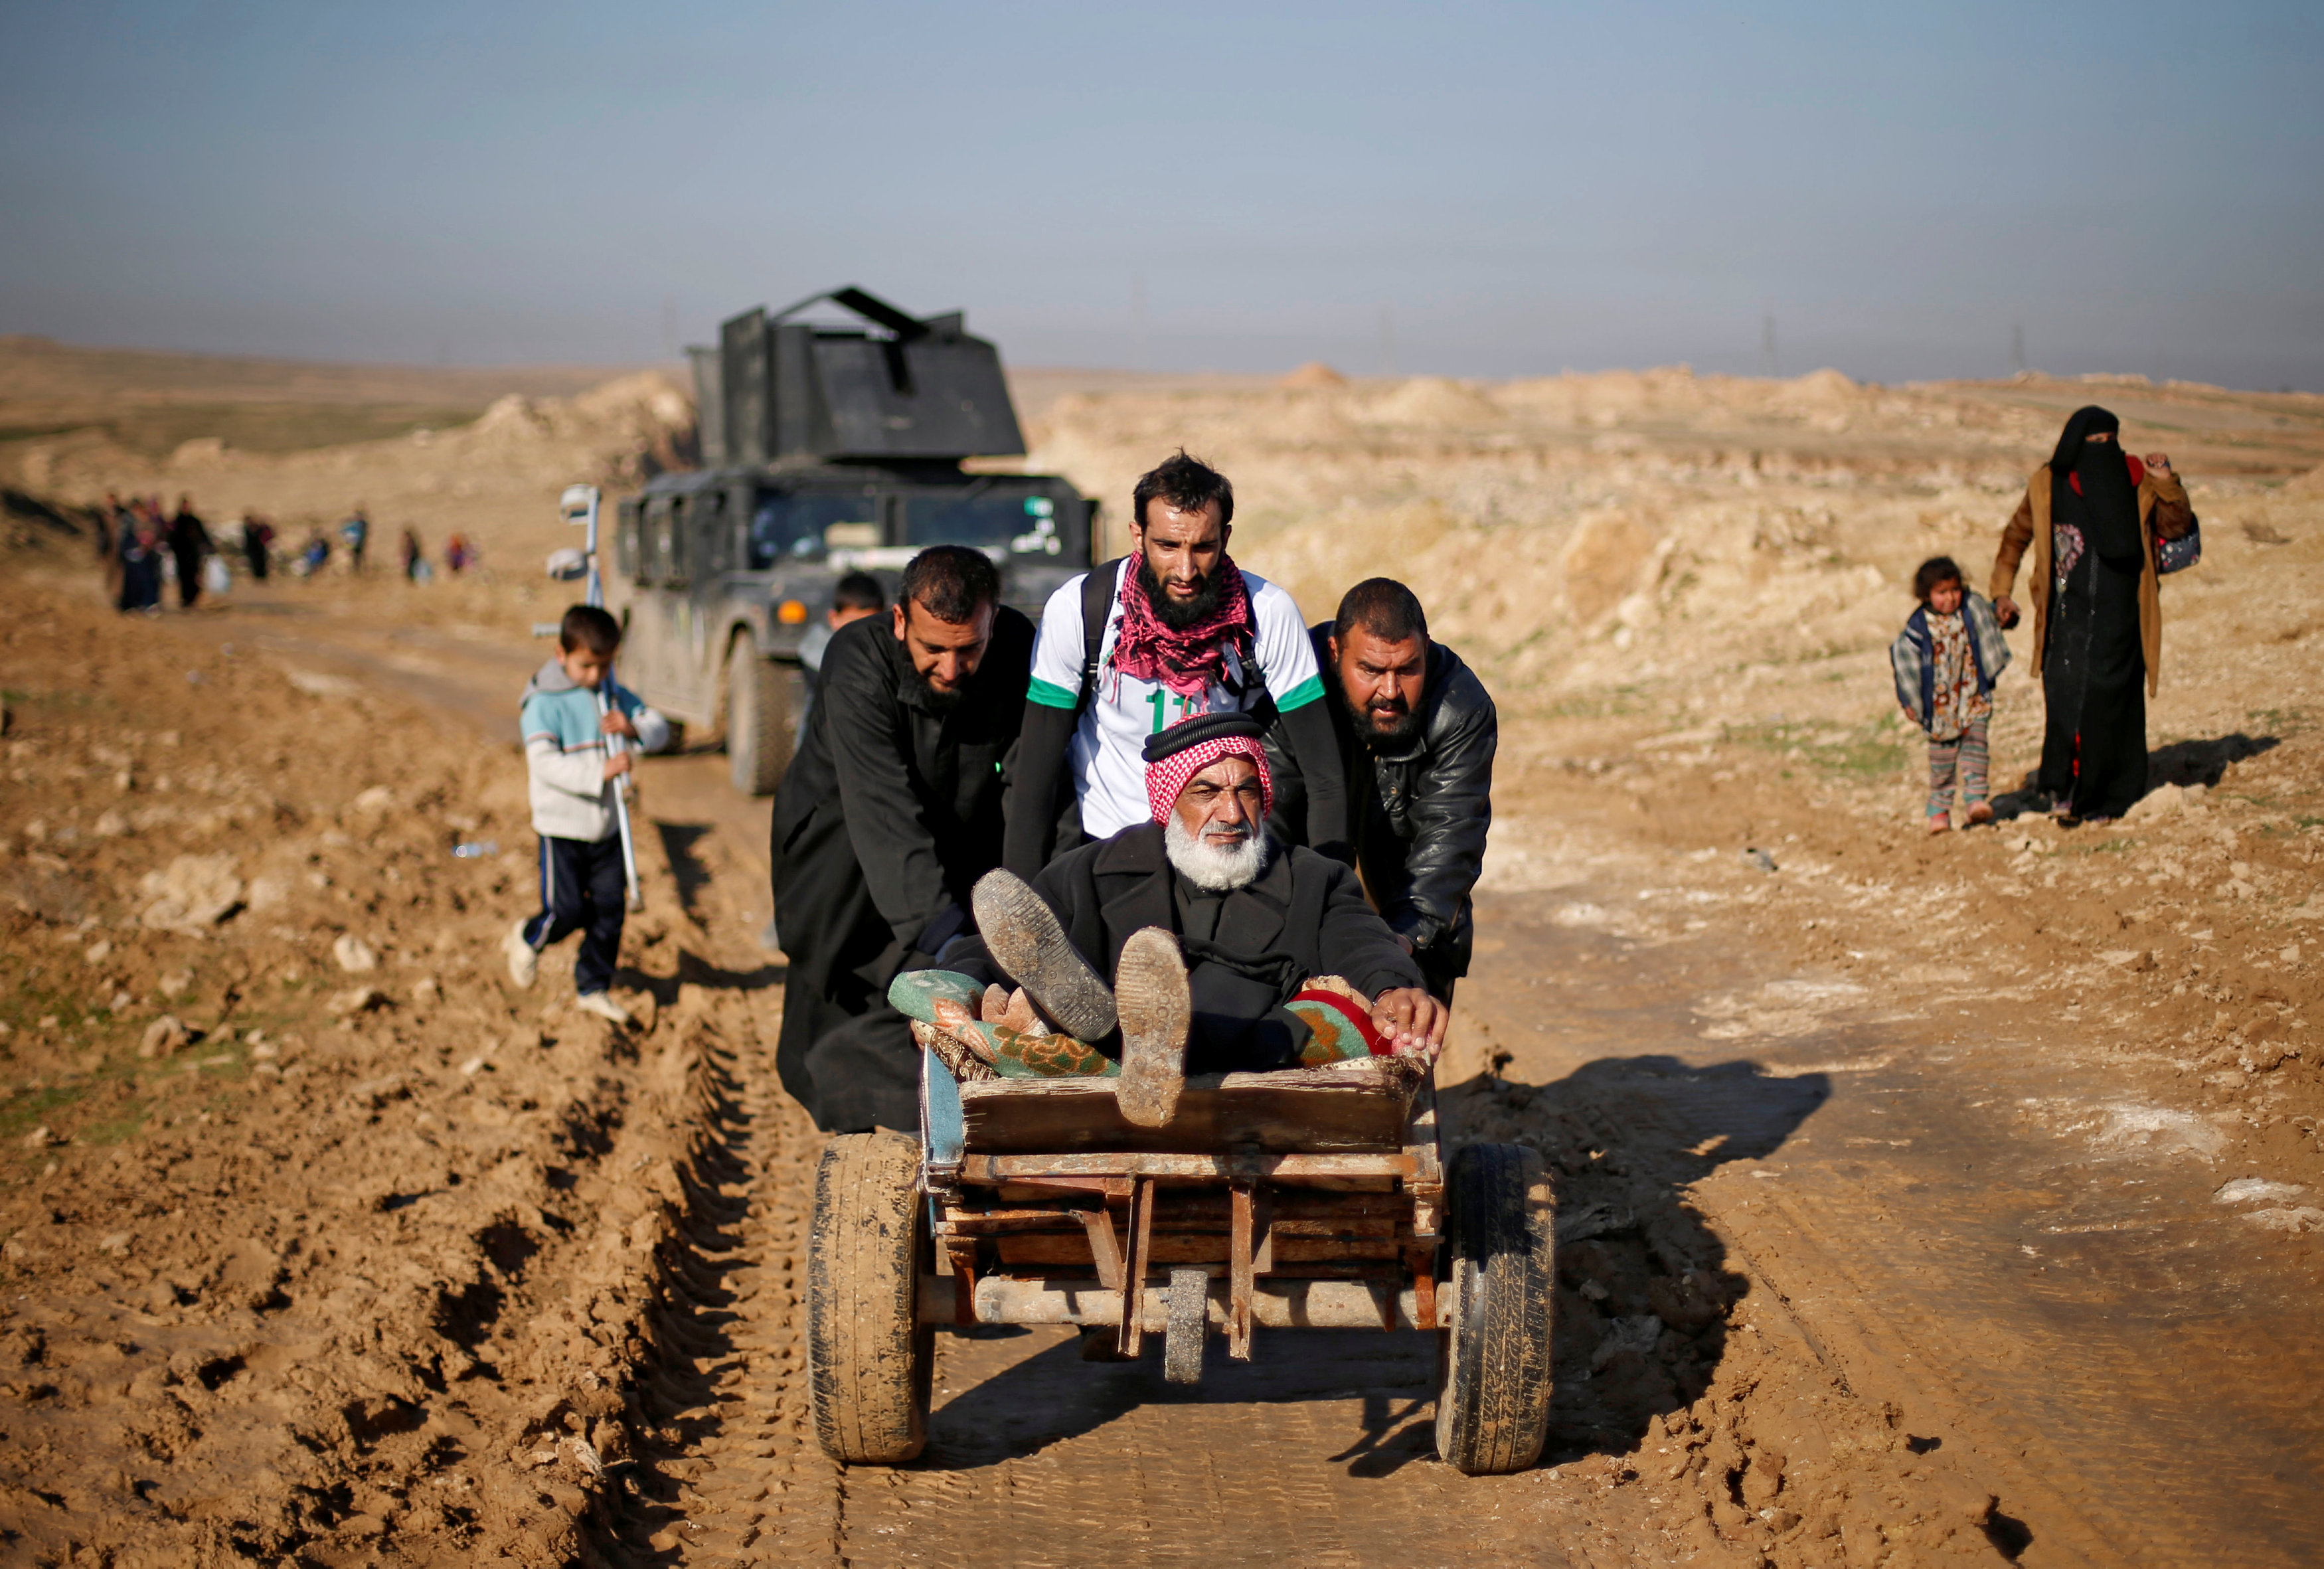 شباب يجرون عربة تحمل رجل مسن فى اتجاه معسكرات القوات العراقية